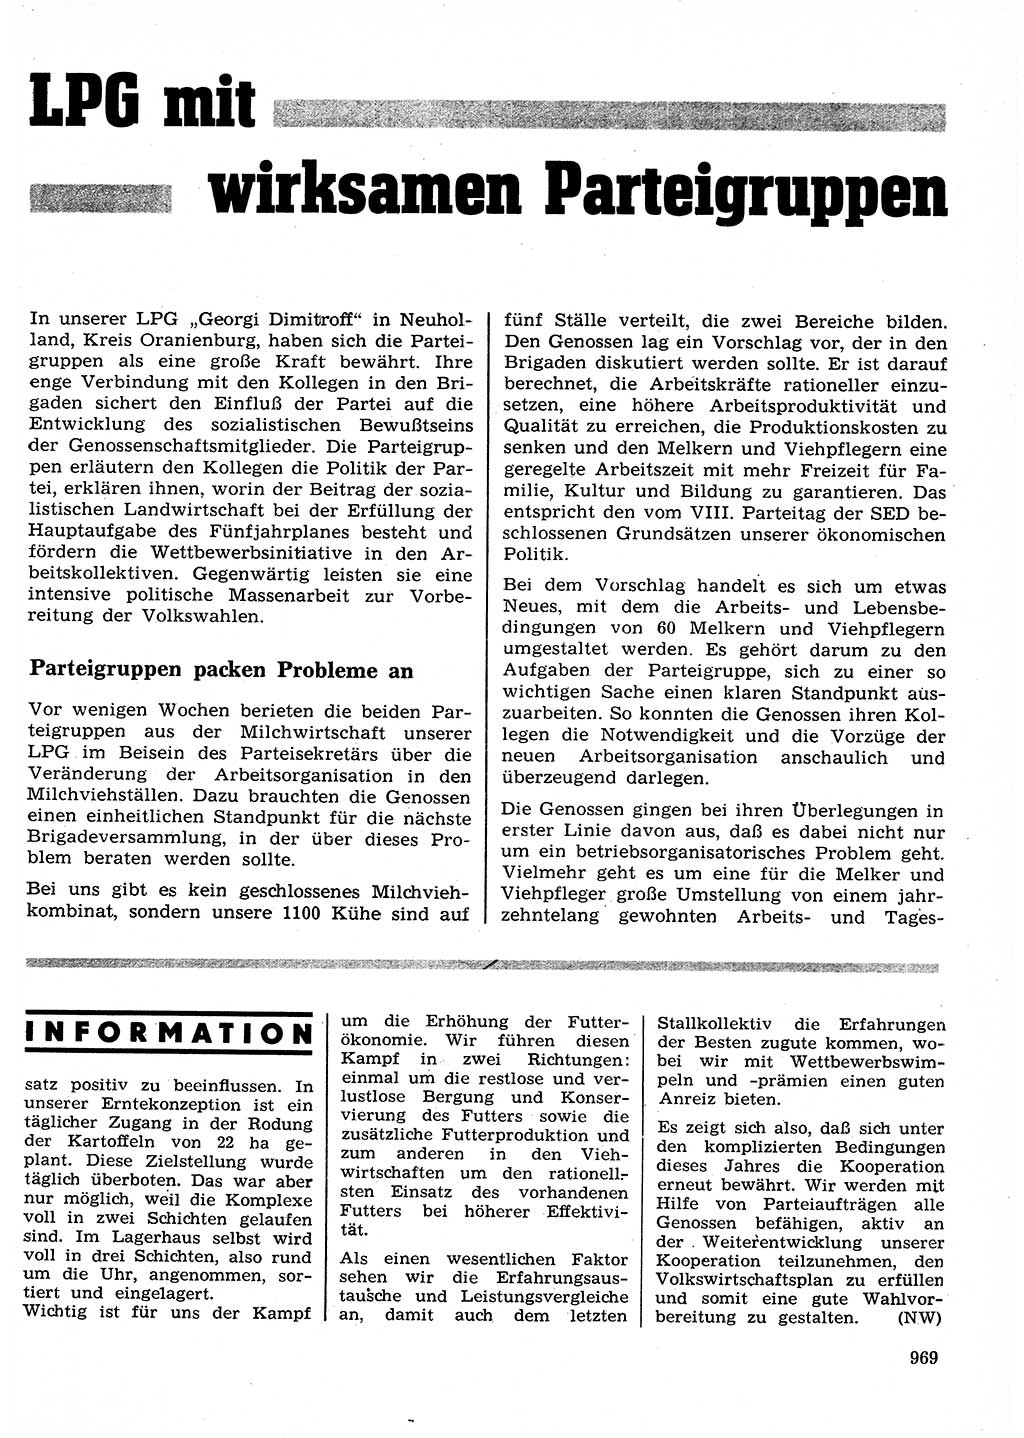 Neuer Weg (NW), Organ des Zentralkomitees (ZK) der SED (Sozialistische Einheitspartei Deutschlands) für Fragen des Parteilebens, 26. Jahrgang [Deutsche Demokratische Republik (DDR)] 1971, Seite 969 (NW ZK SED DDR 1971, S. 969)